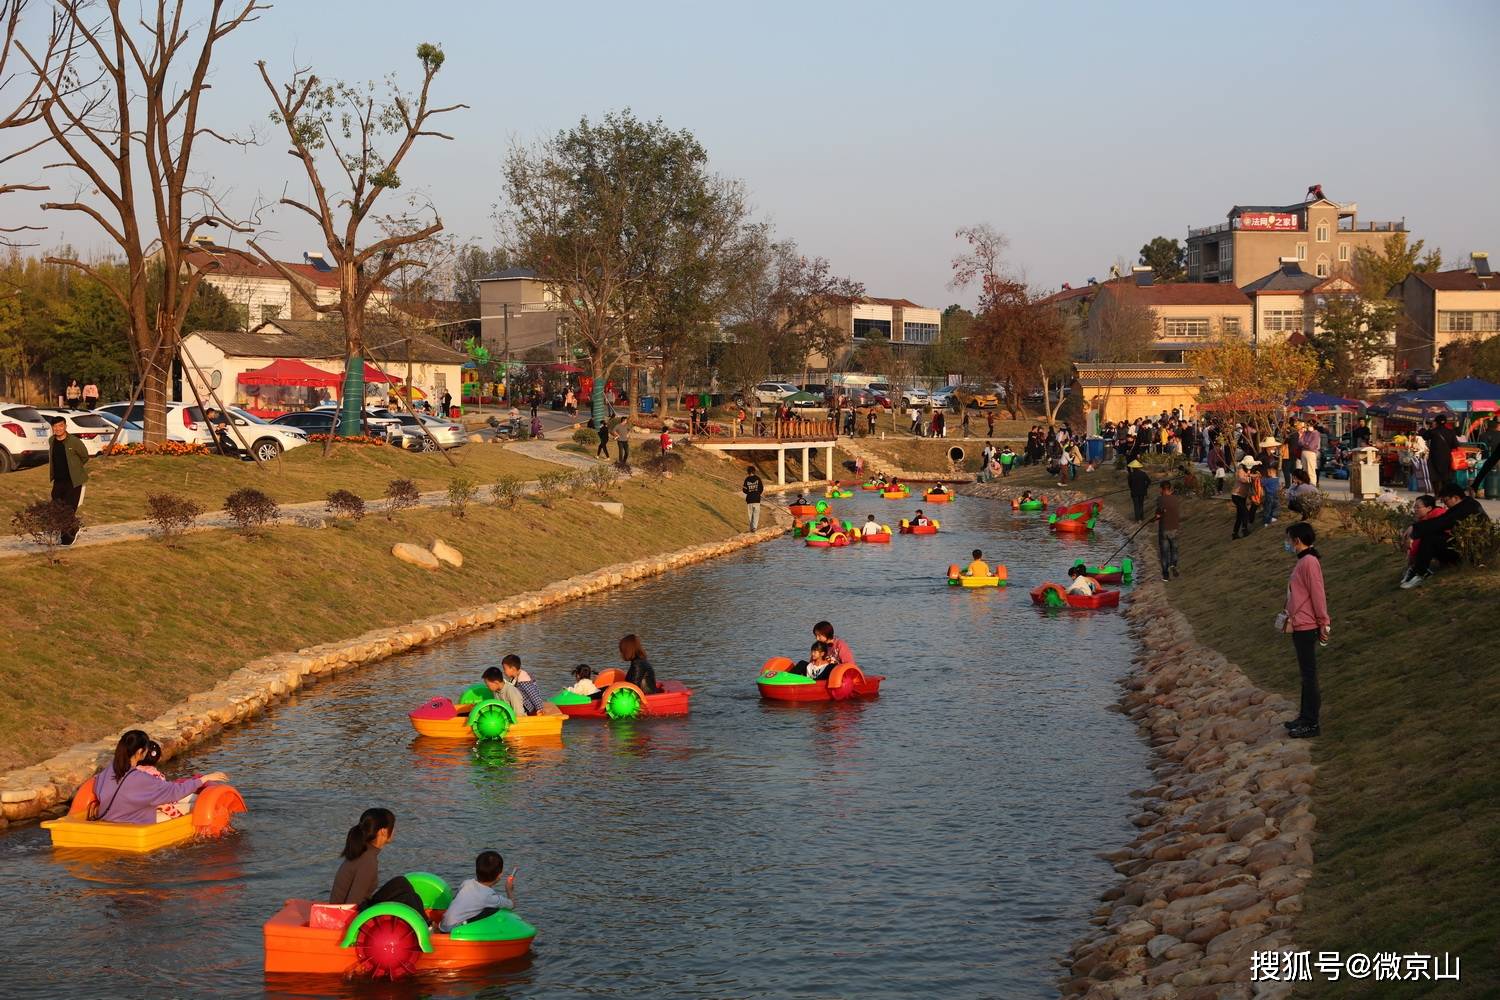 12月,美丽乡村文峰村,游人划船, 该村成为网红打卡地